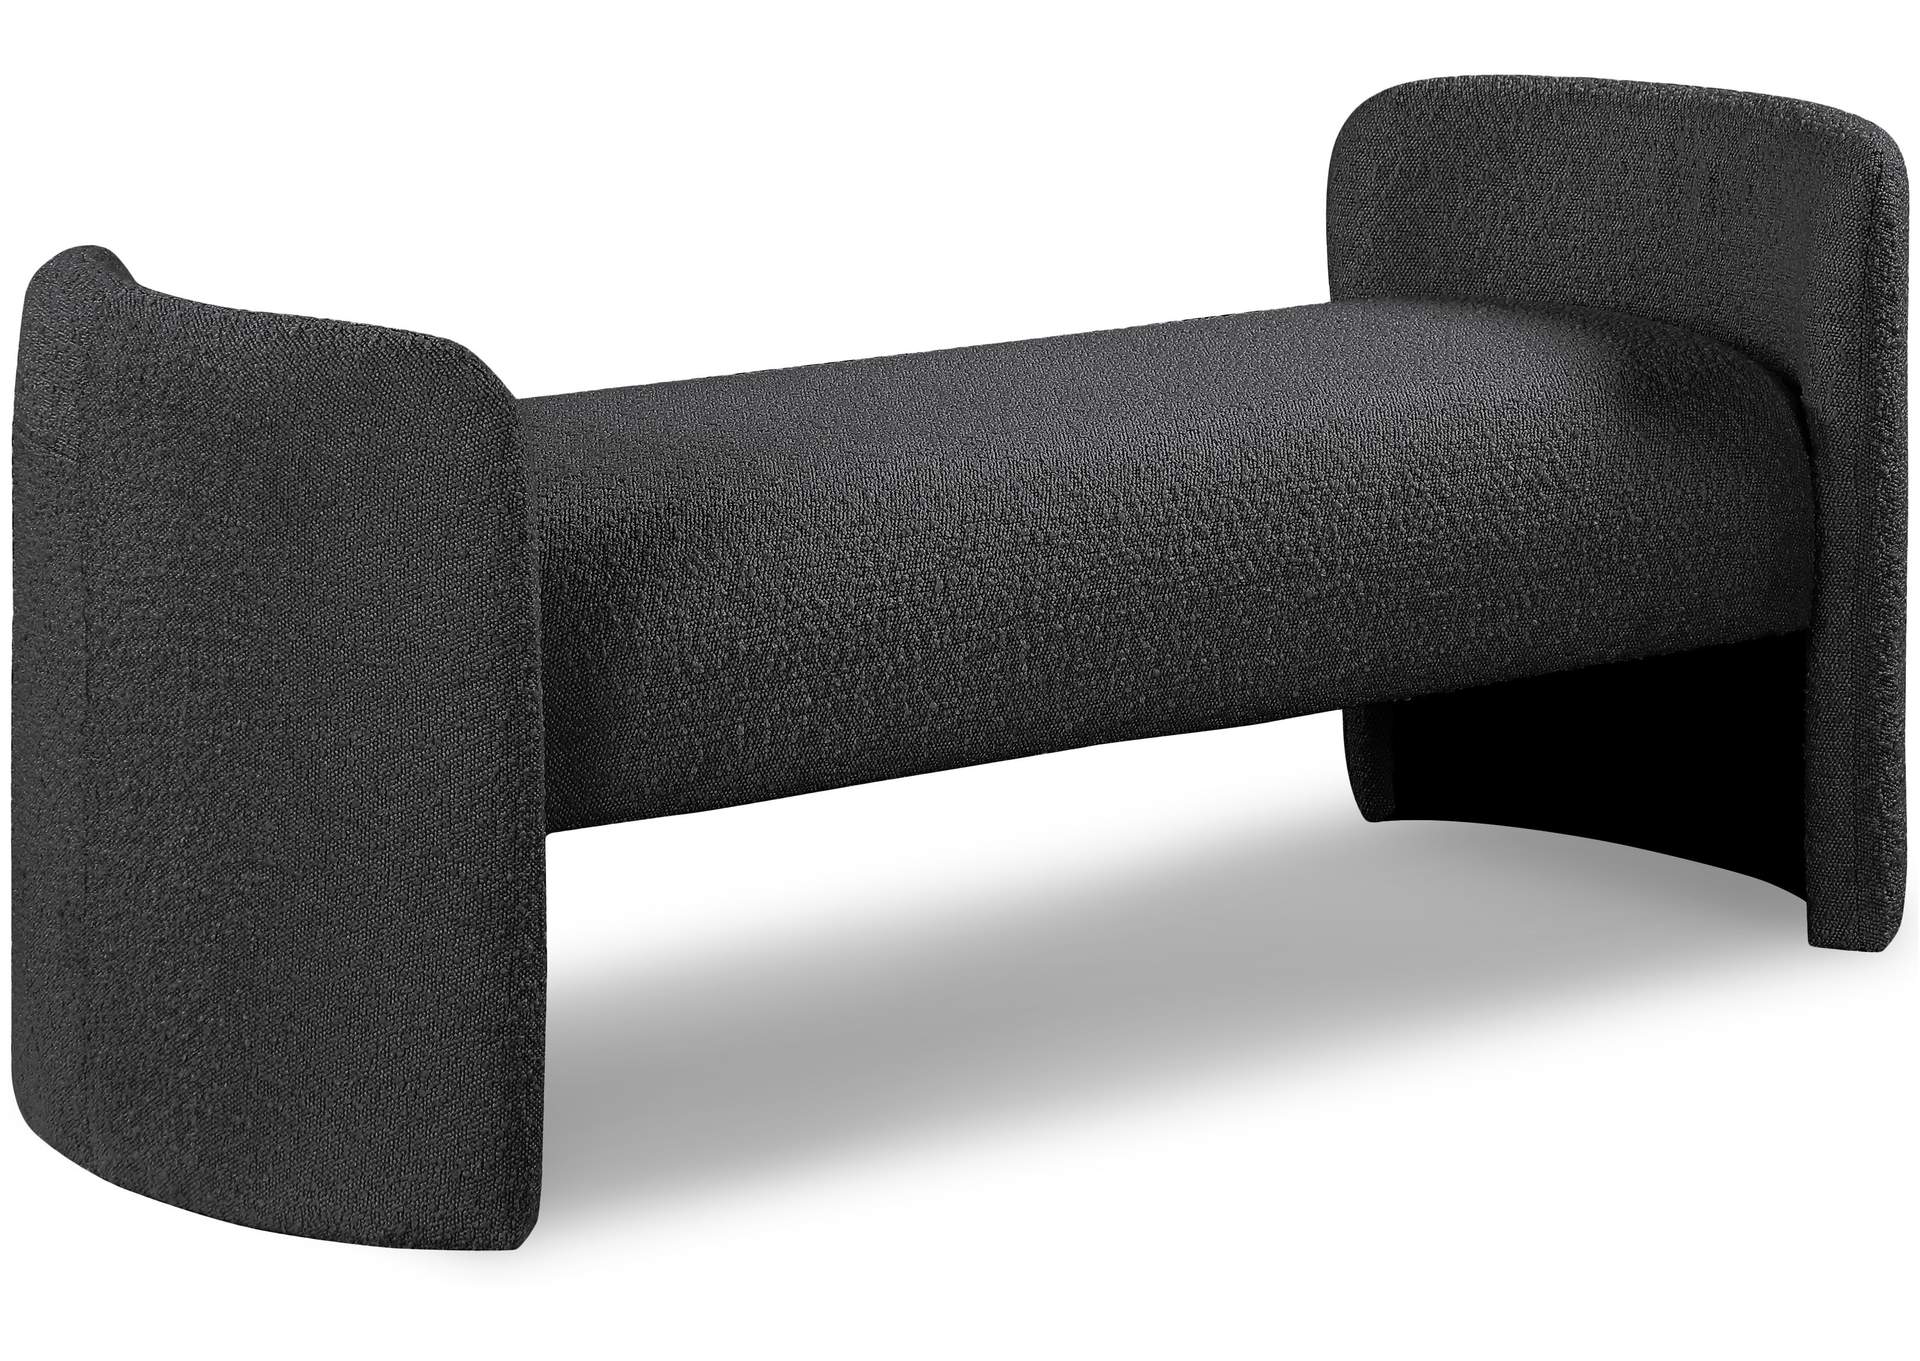 Peyton Black Boucle Fabric Bench,Meridian Furniture